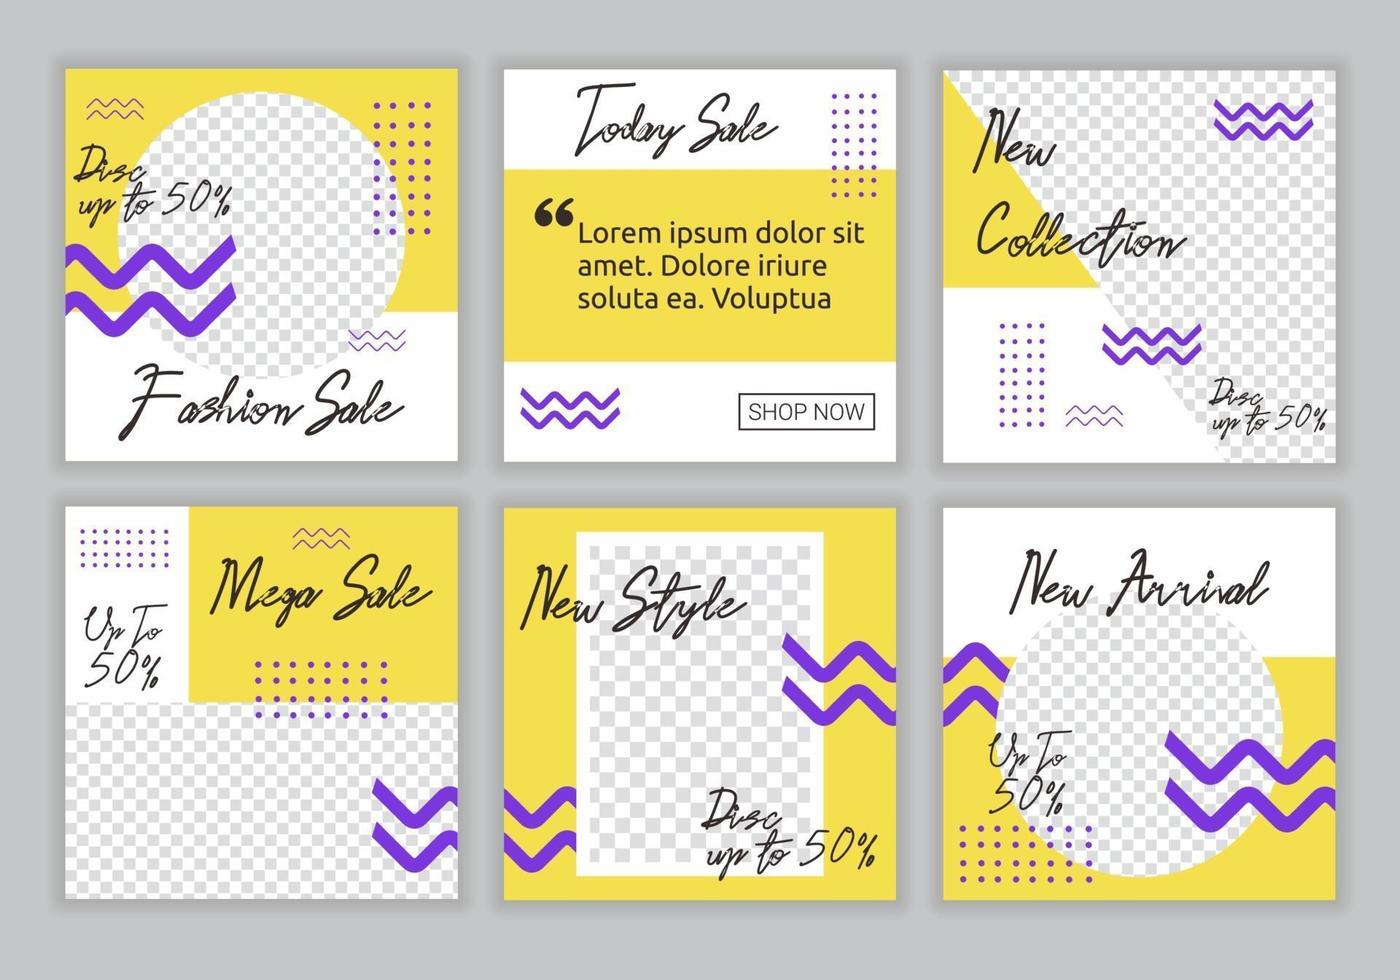 6 Set Sammlung von bearbeitbaren quadratischen Banner Vorlage mit gelben, lila und weißen Farbkombination Hintergrundfarbe mit Streifenlinie Form. Modeverkauf Werbe-Web-Banner für Social-Media-Post vektor